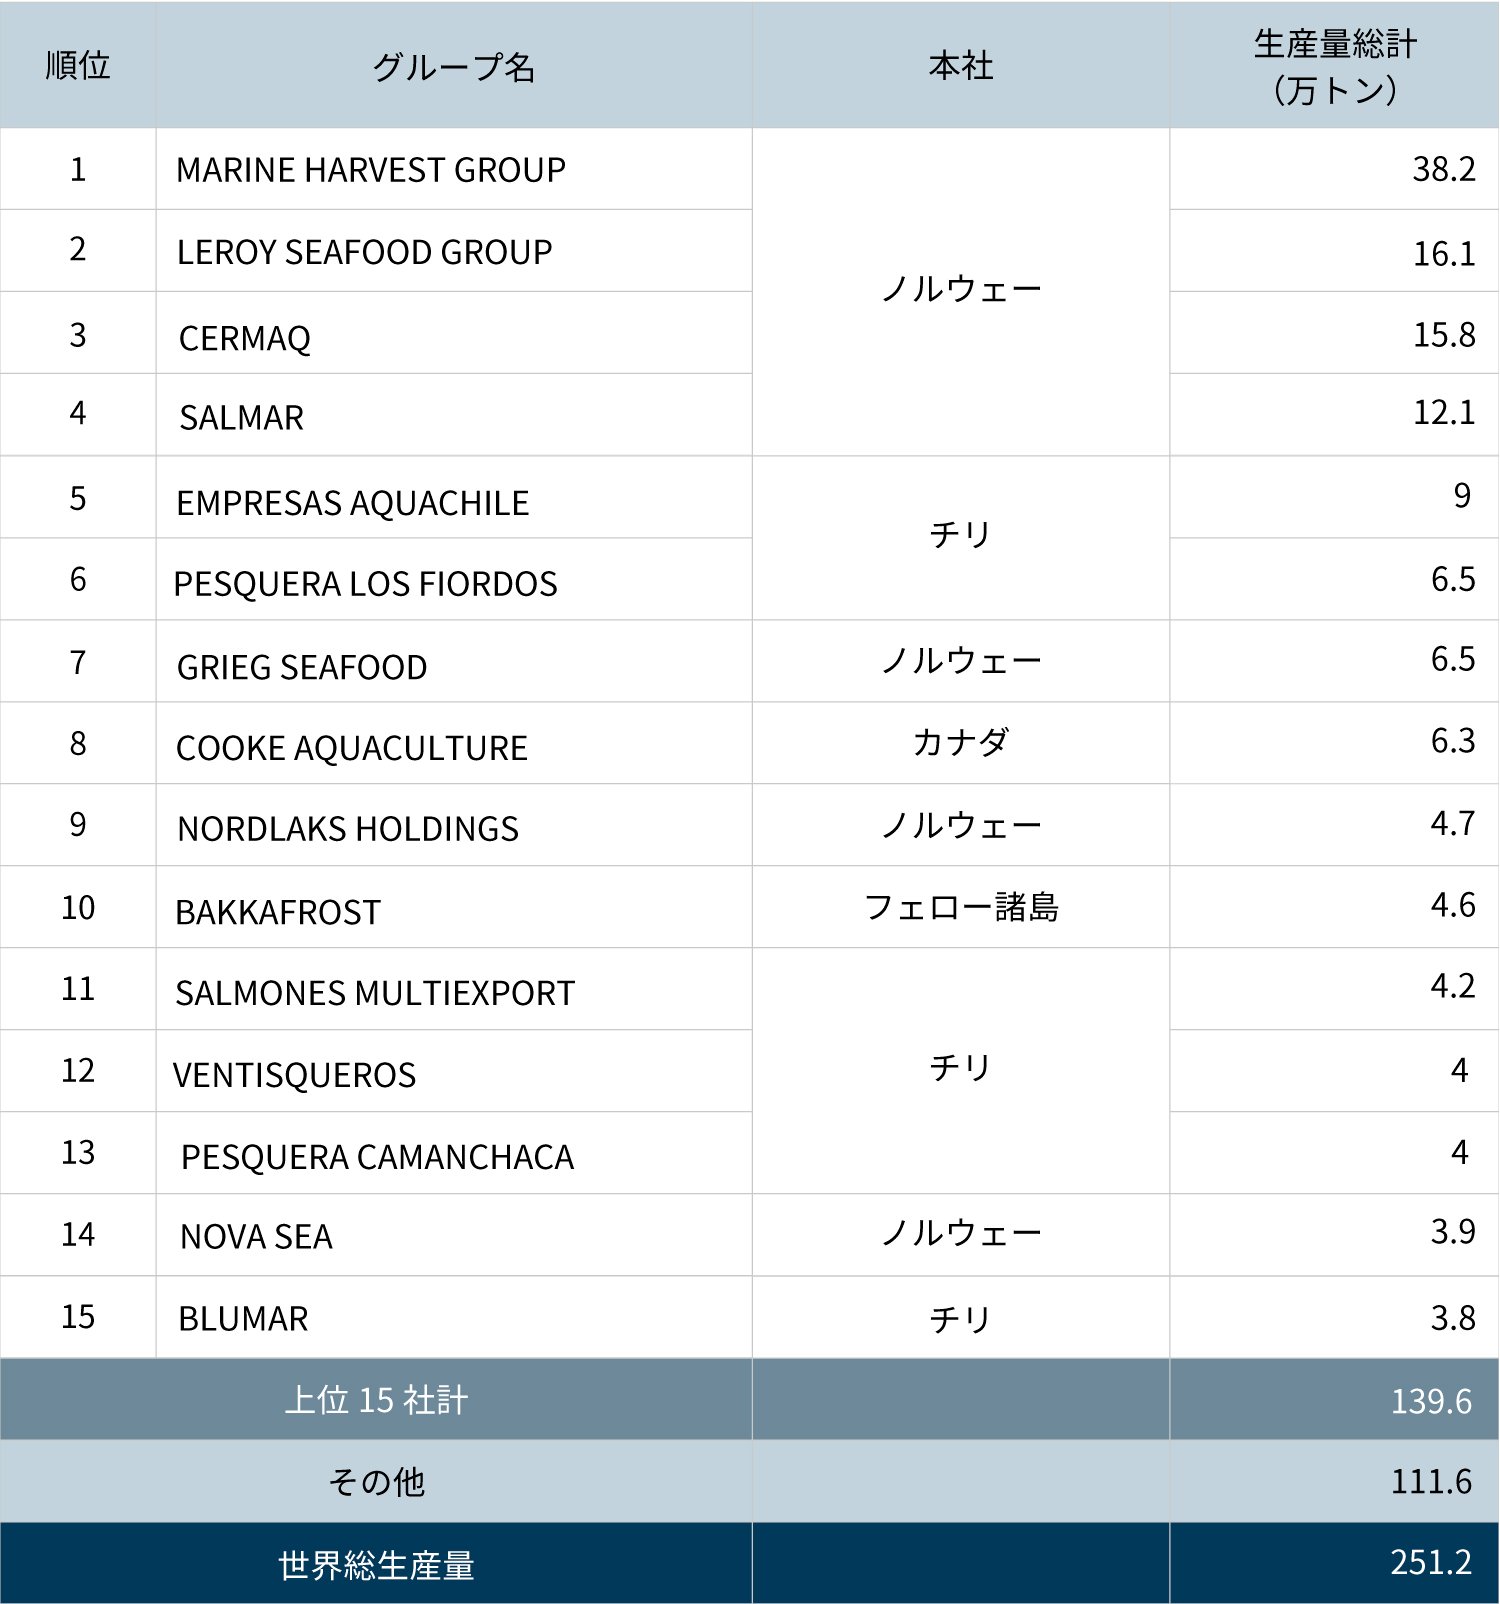 養殖サーモン類生産量世界上位15社の生産状況（2013年）